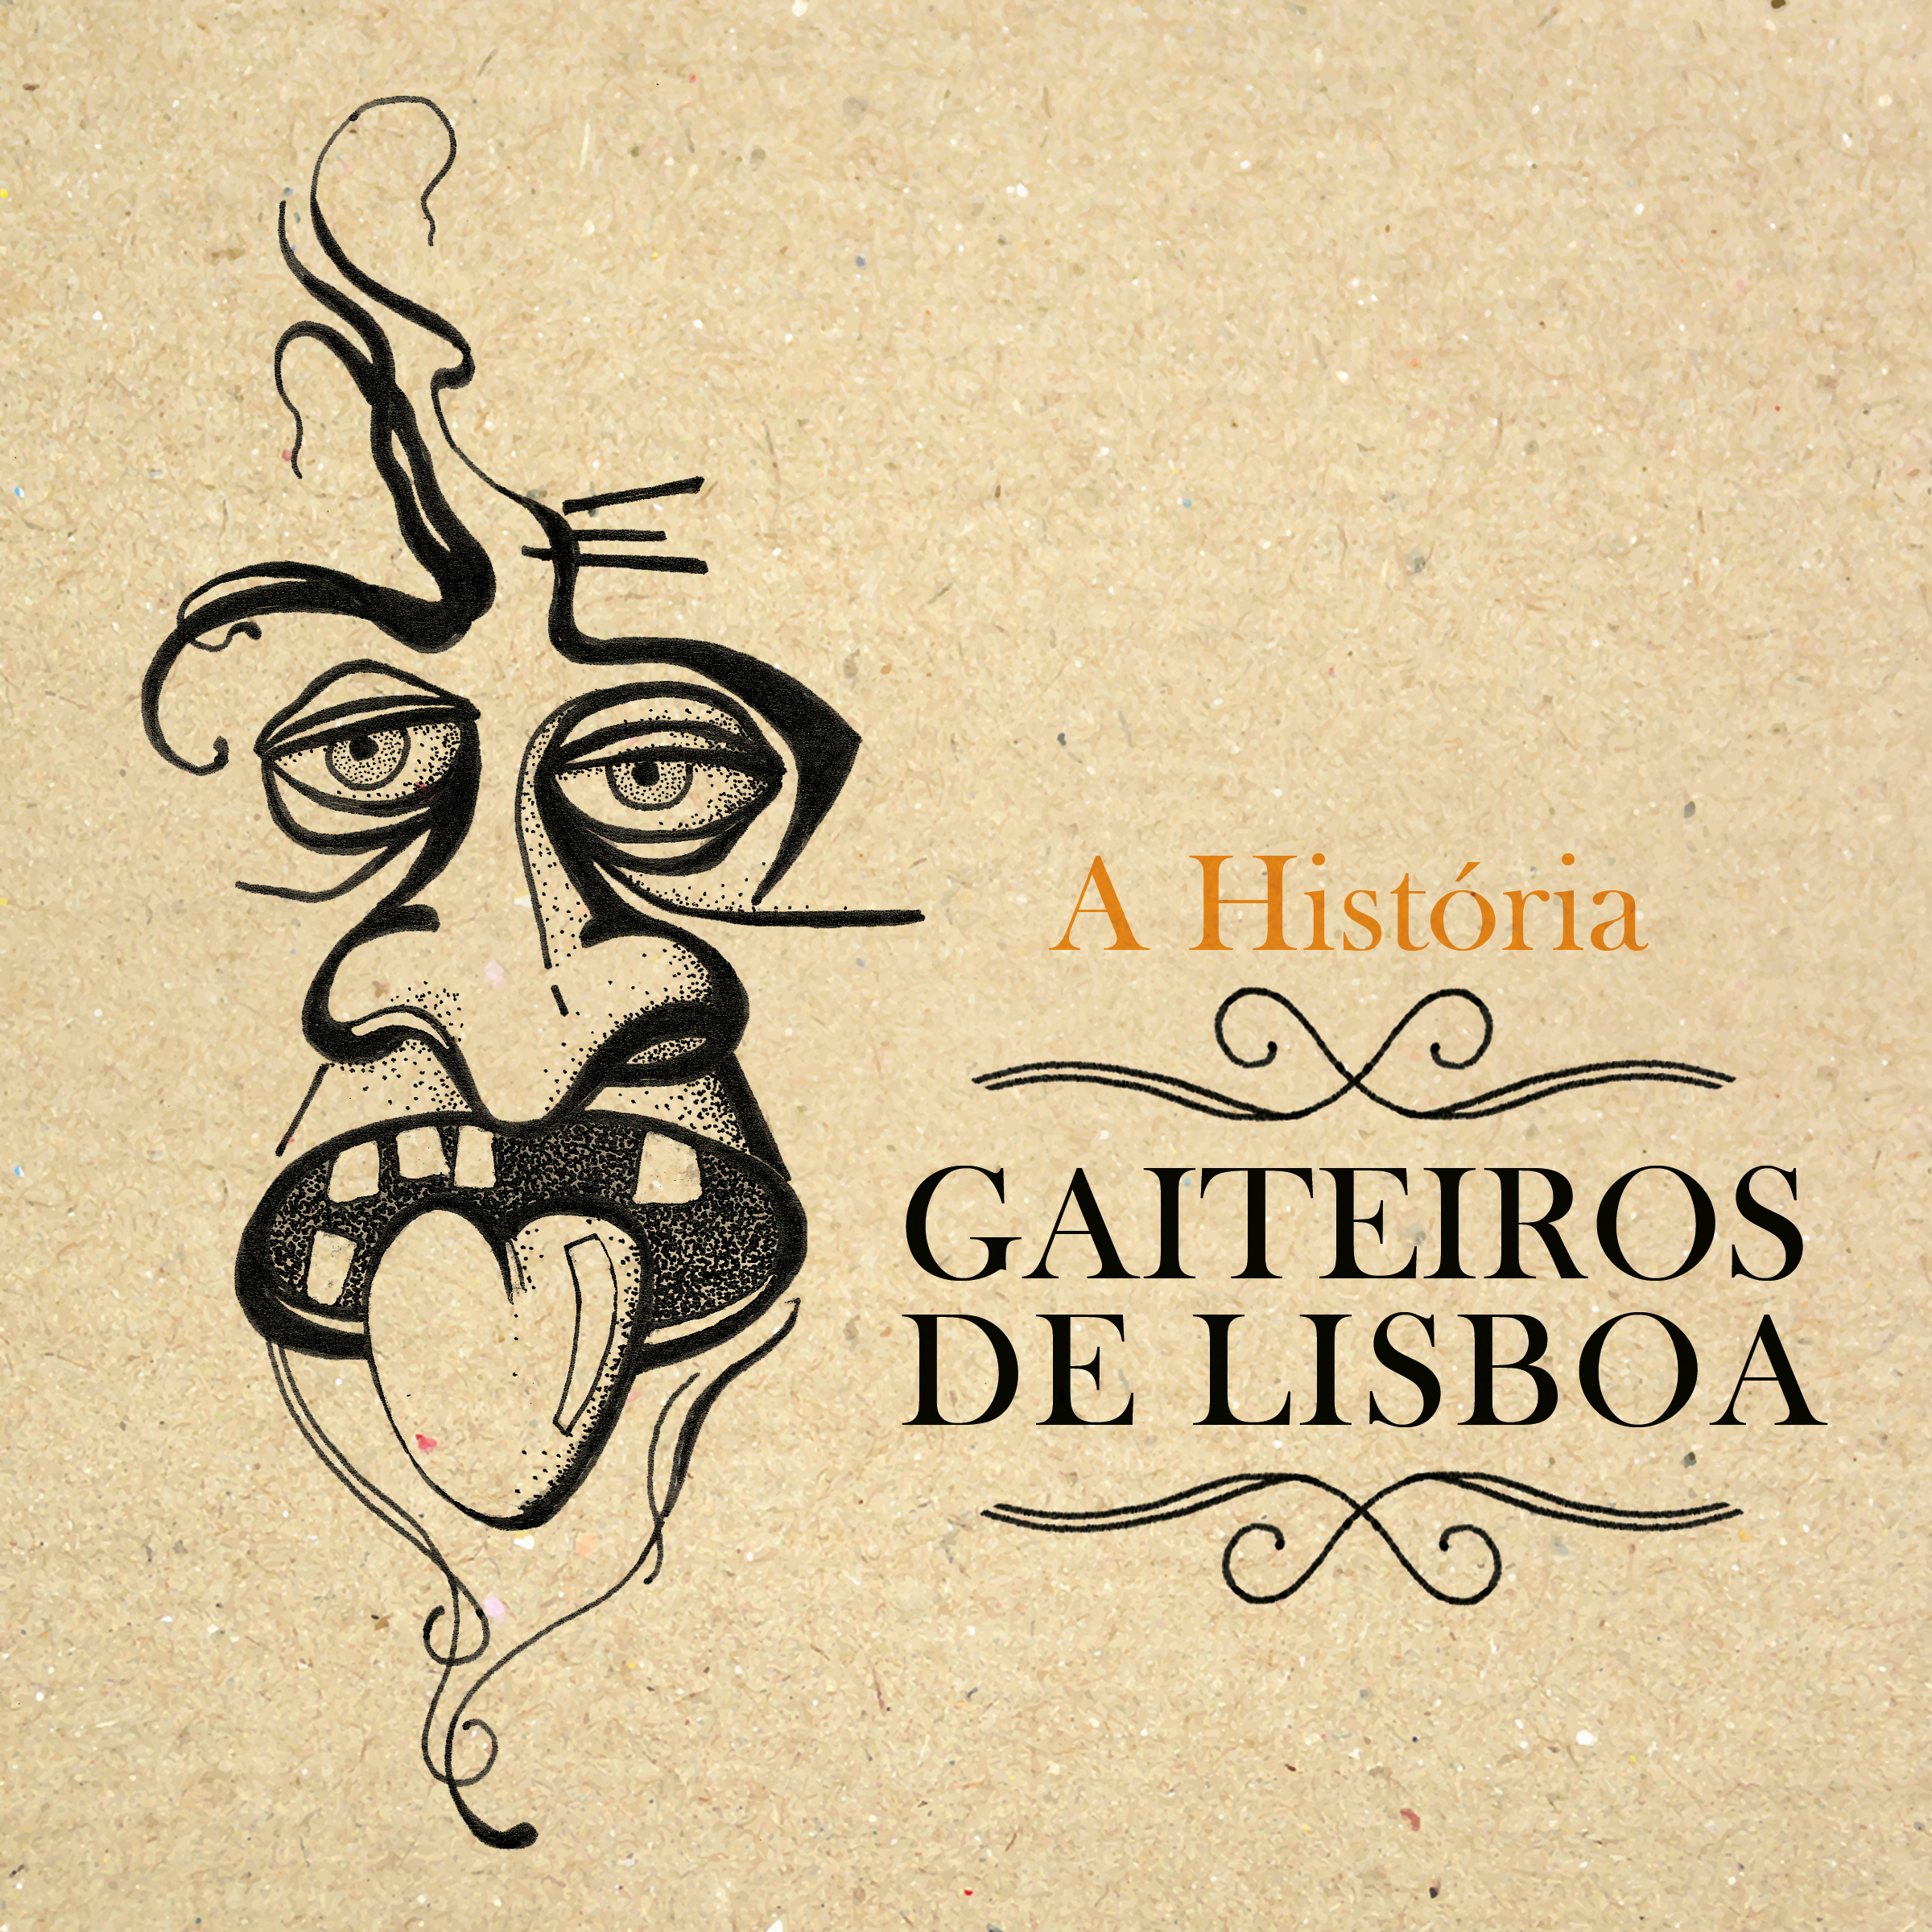 Gaiteiros de Lisboa – A História